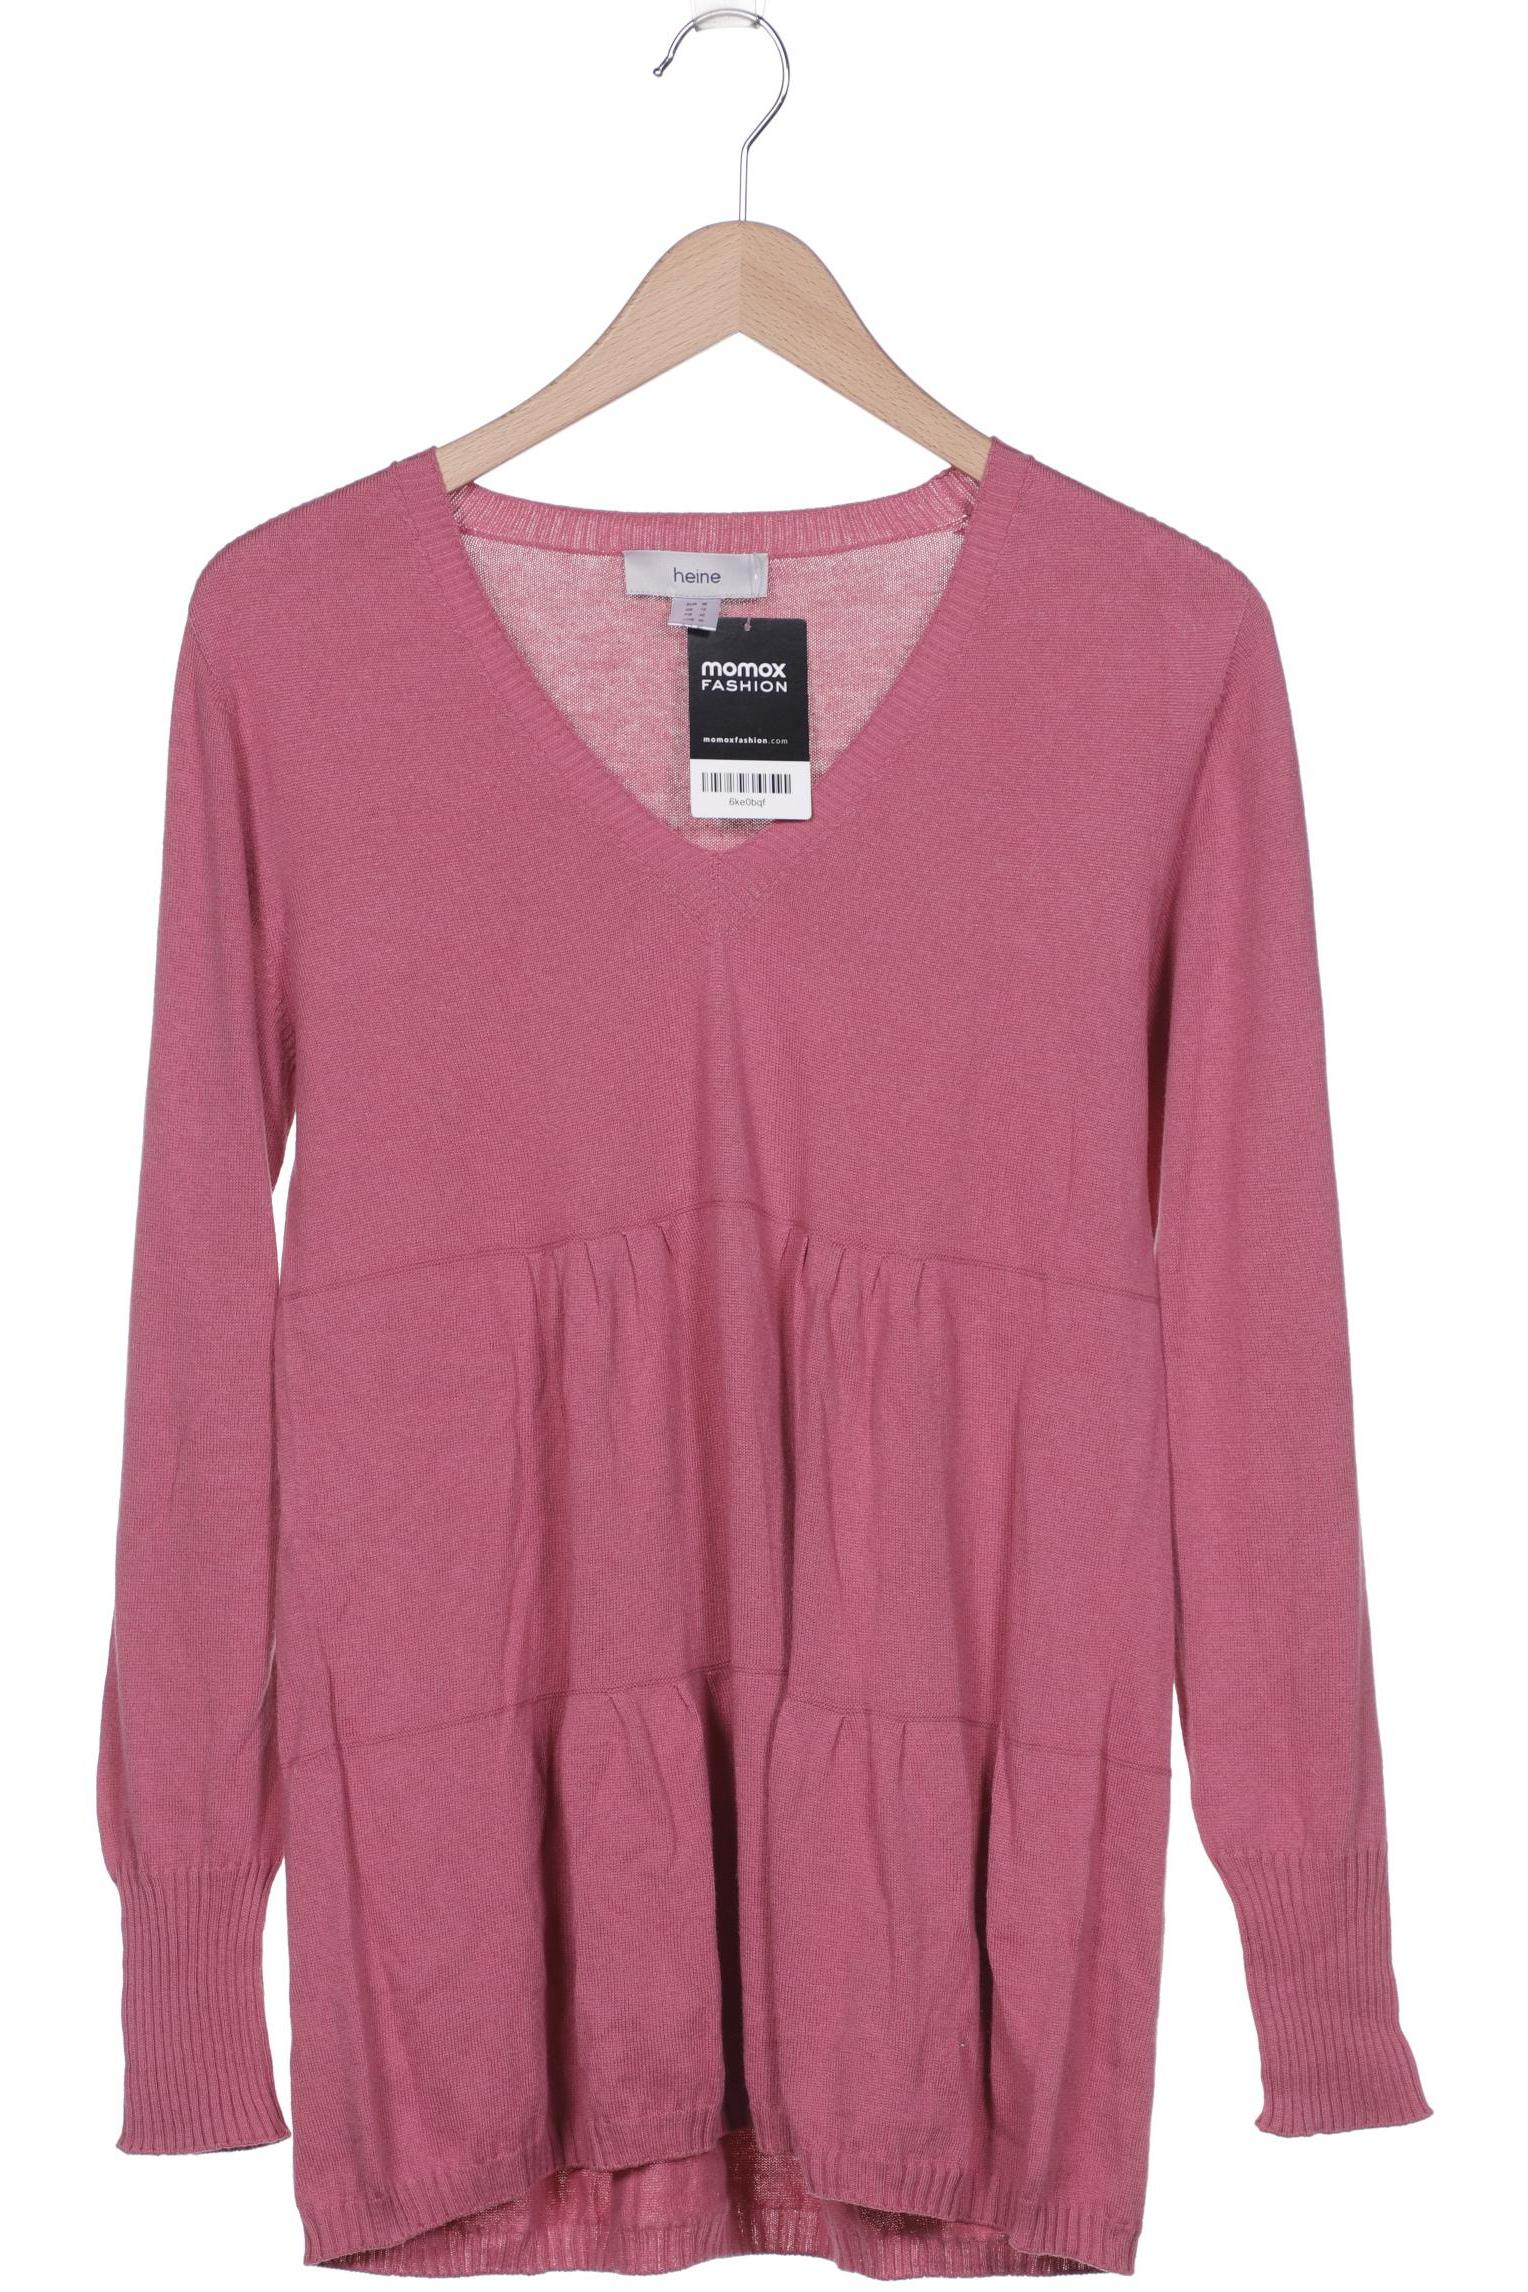 Heine Damen Pullover, pink, Gr. 38 von heine